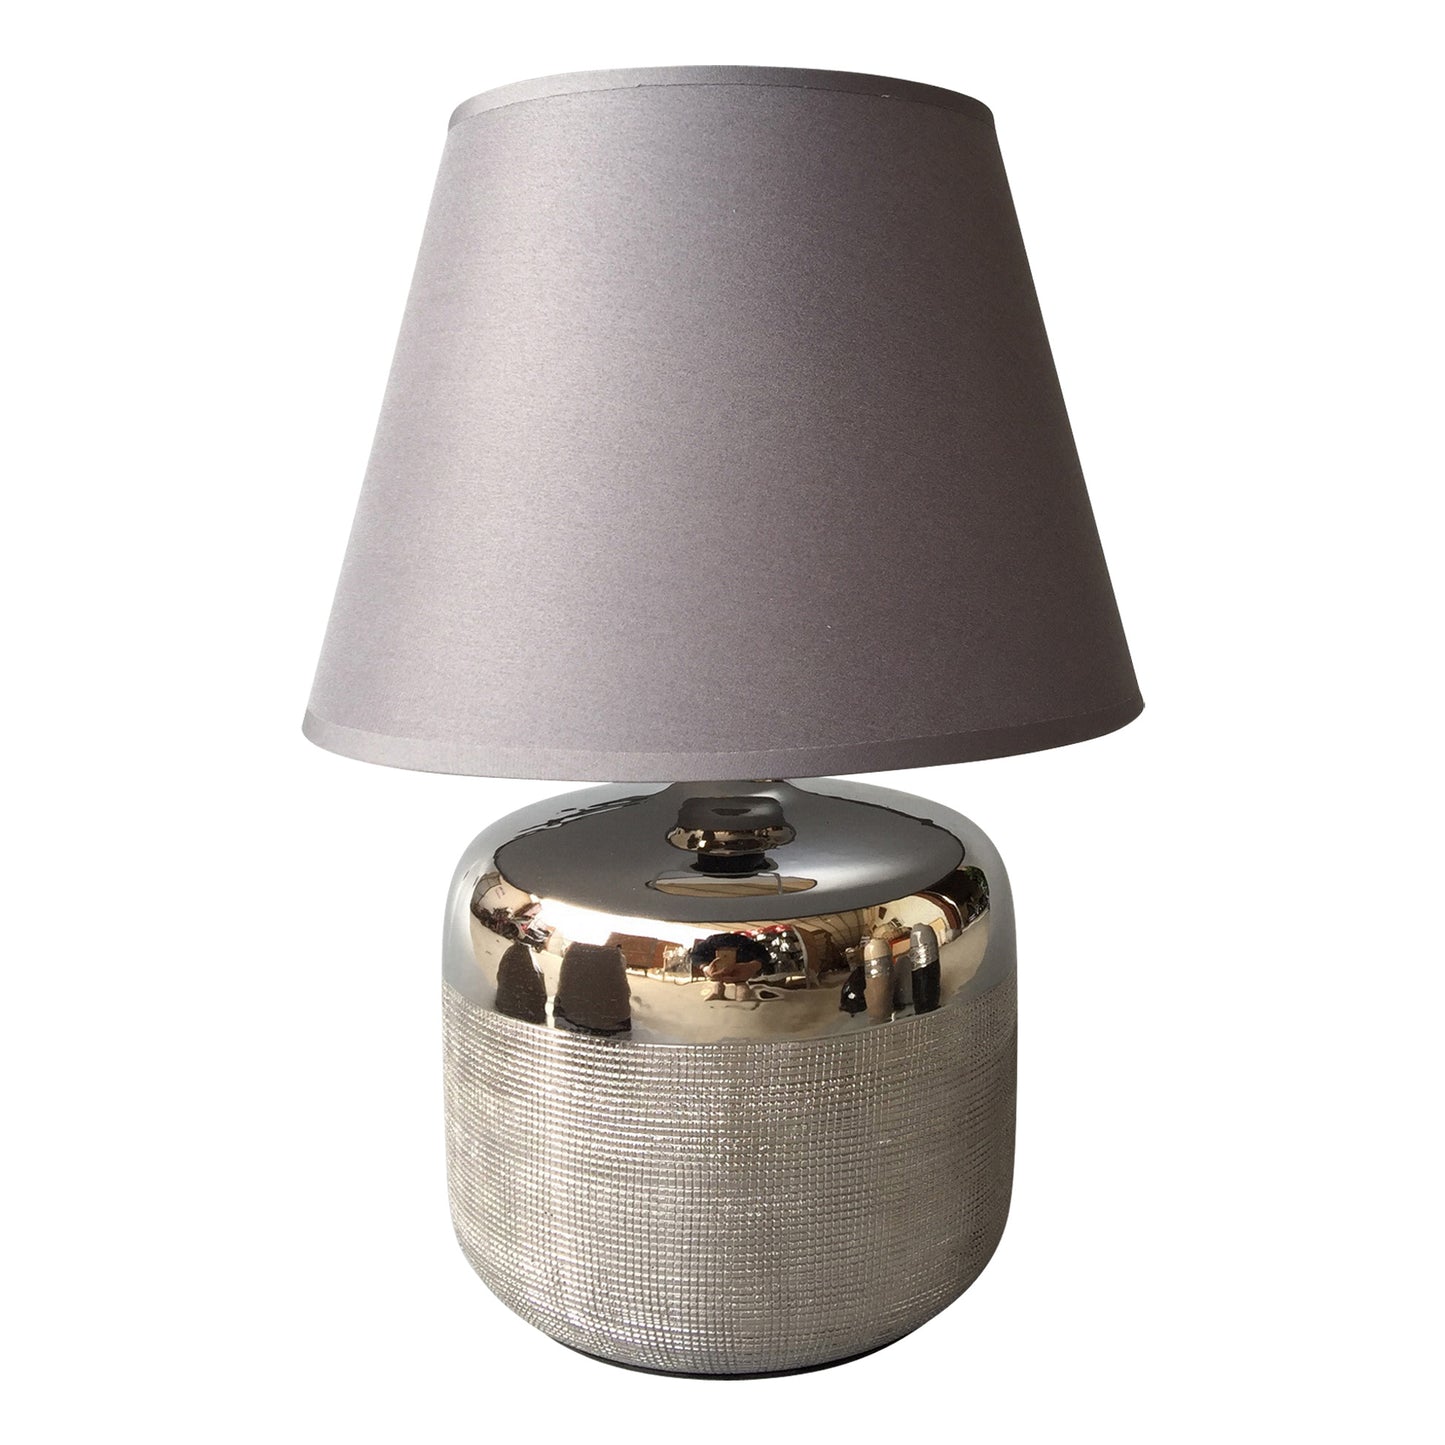 Homea Keramik Tischlampe 34cm Tischleuchte Nachttisch Lampe Leuchte Chrom Optik